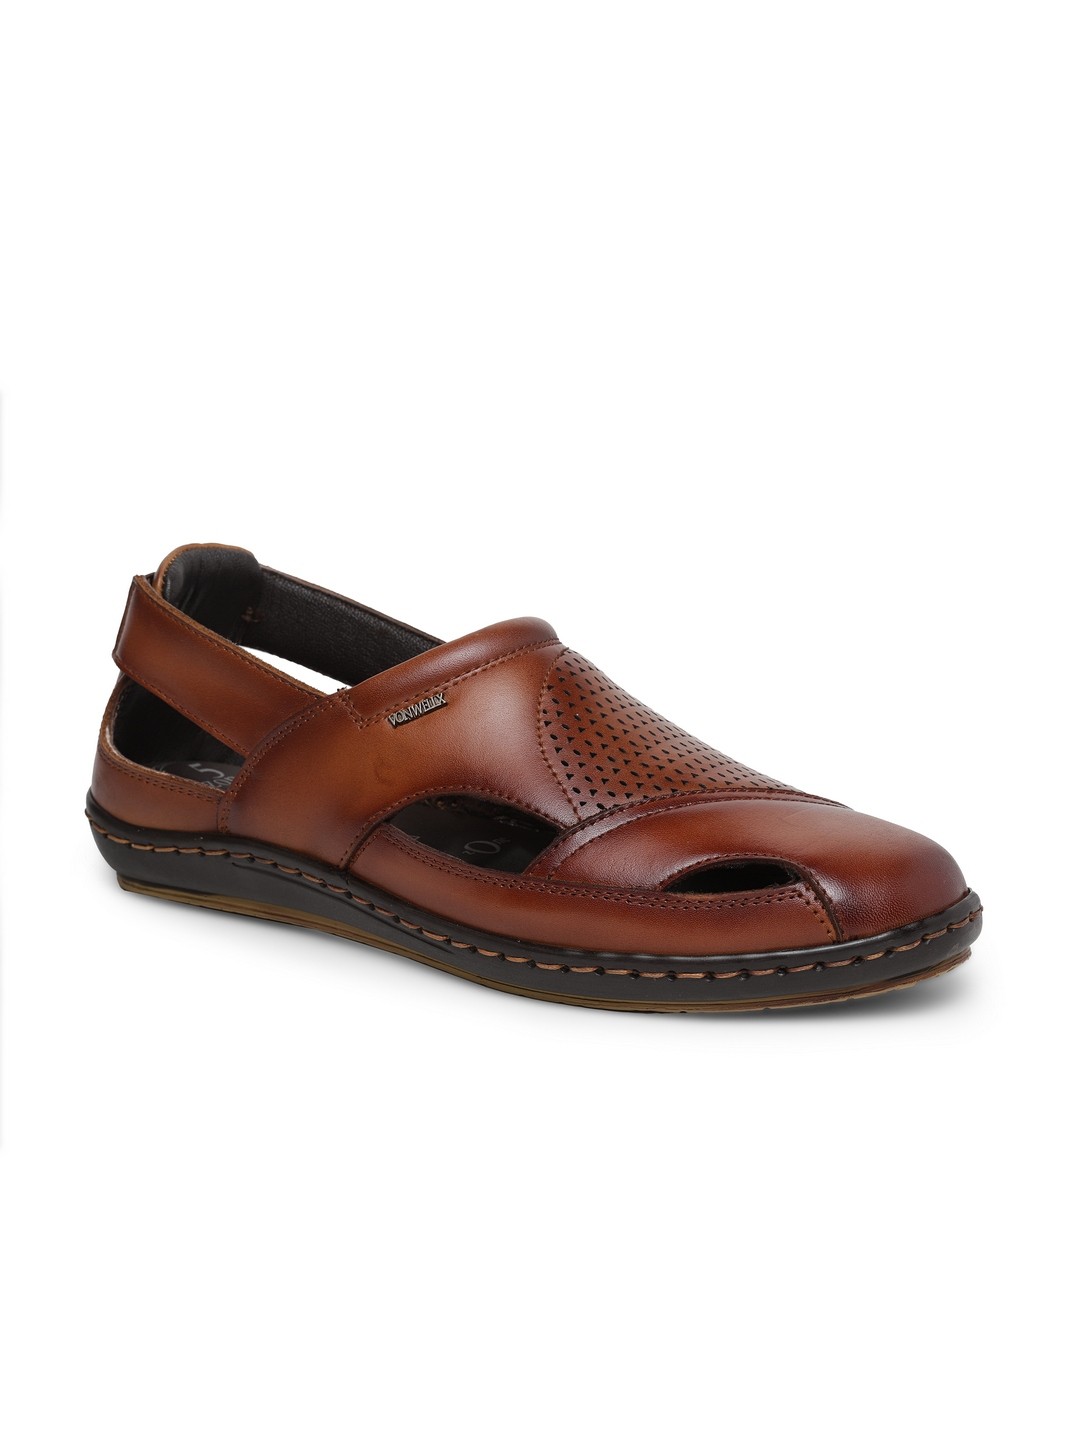 Buy Von Wellx Germany Comfort Men's Tan Sandal Eddie Online in Udaipur